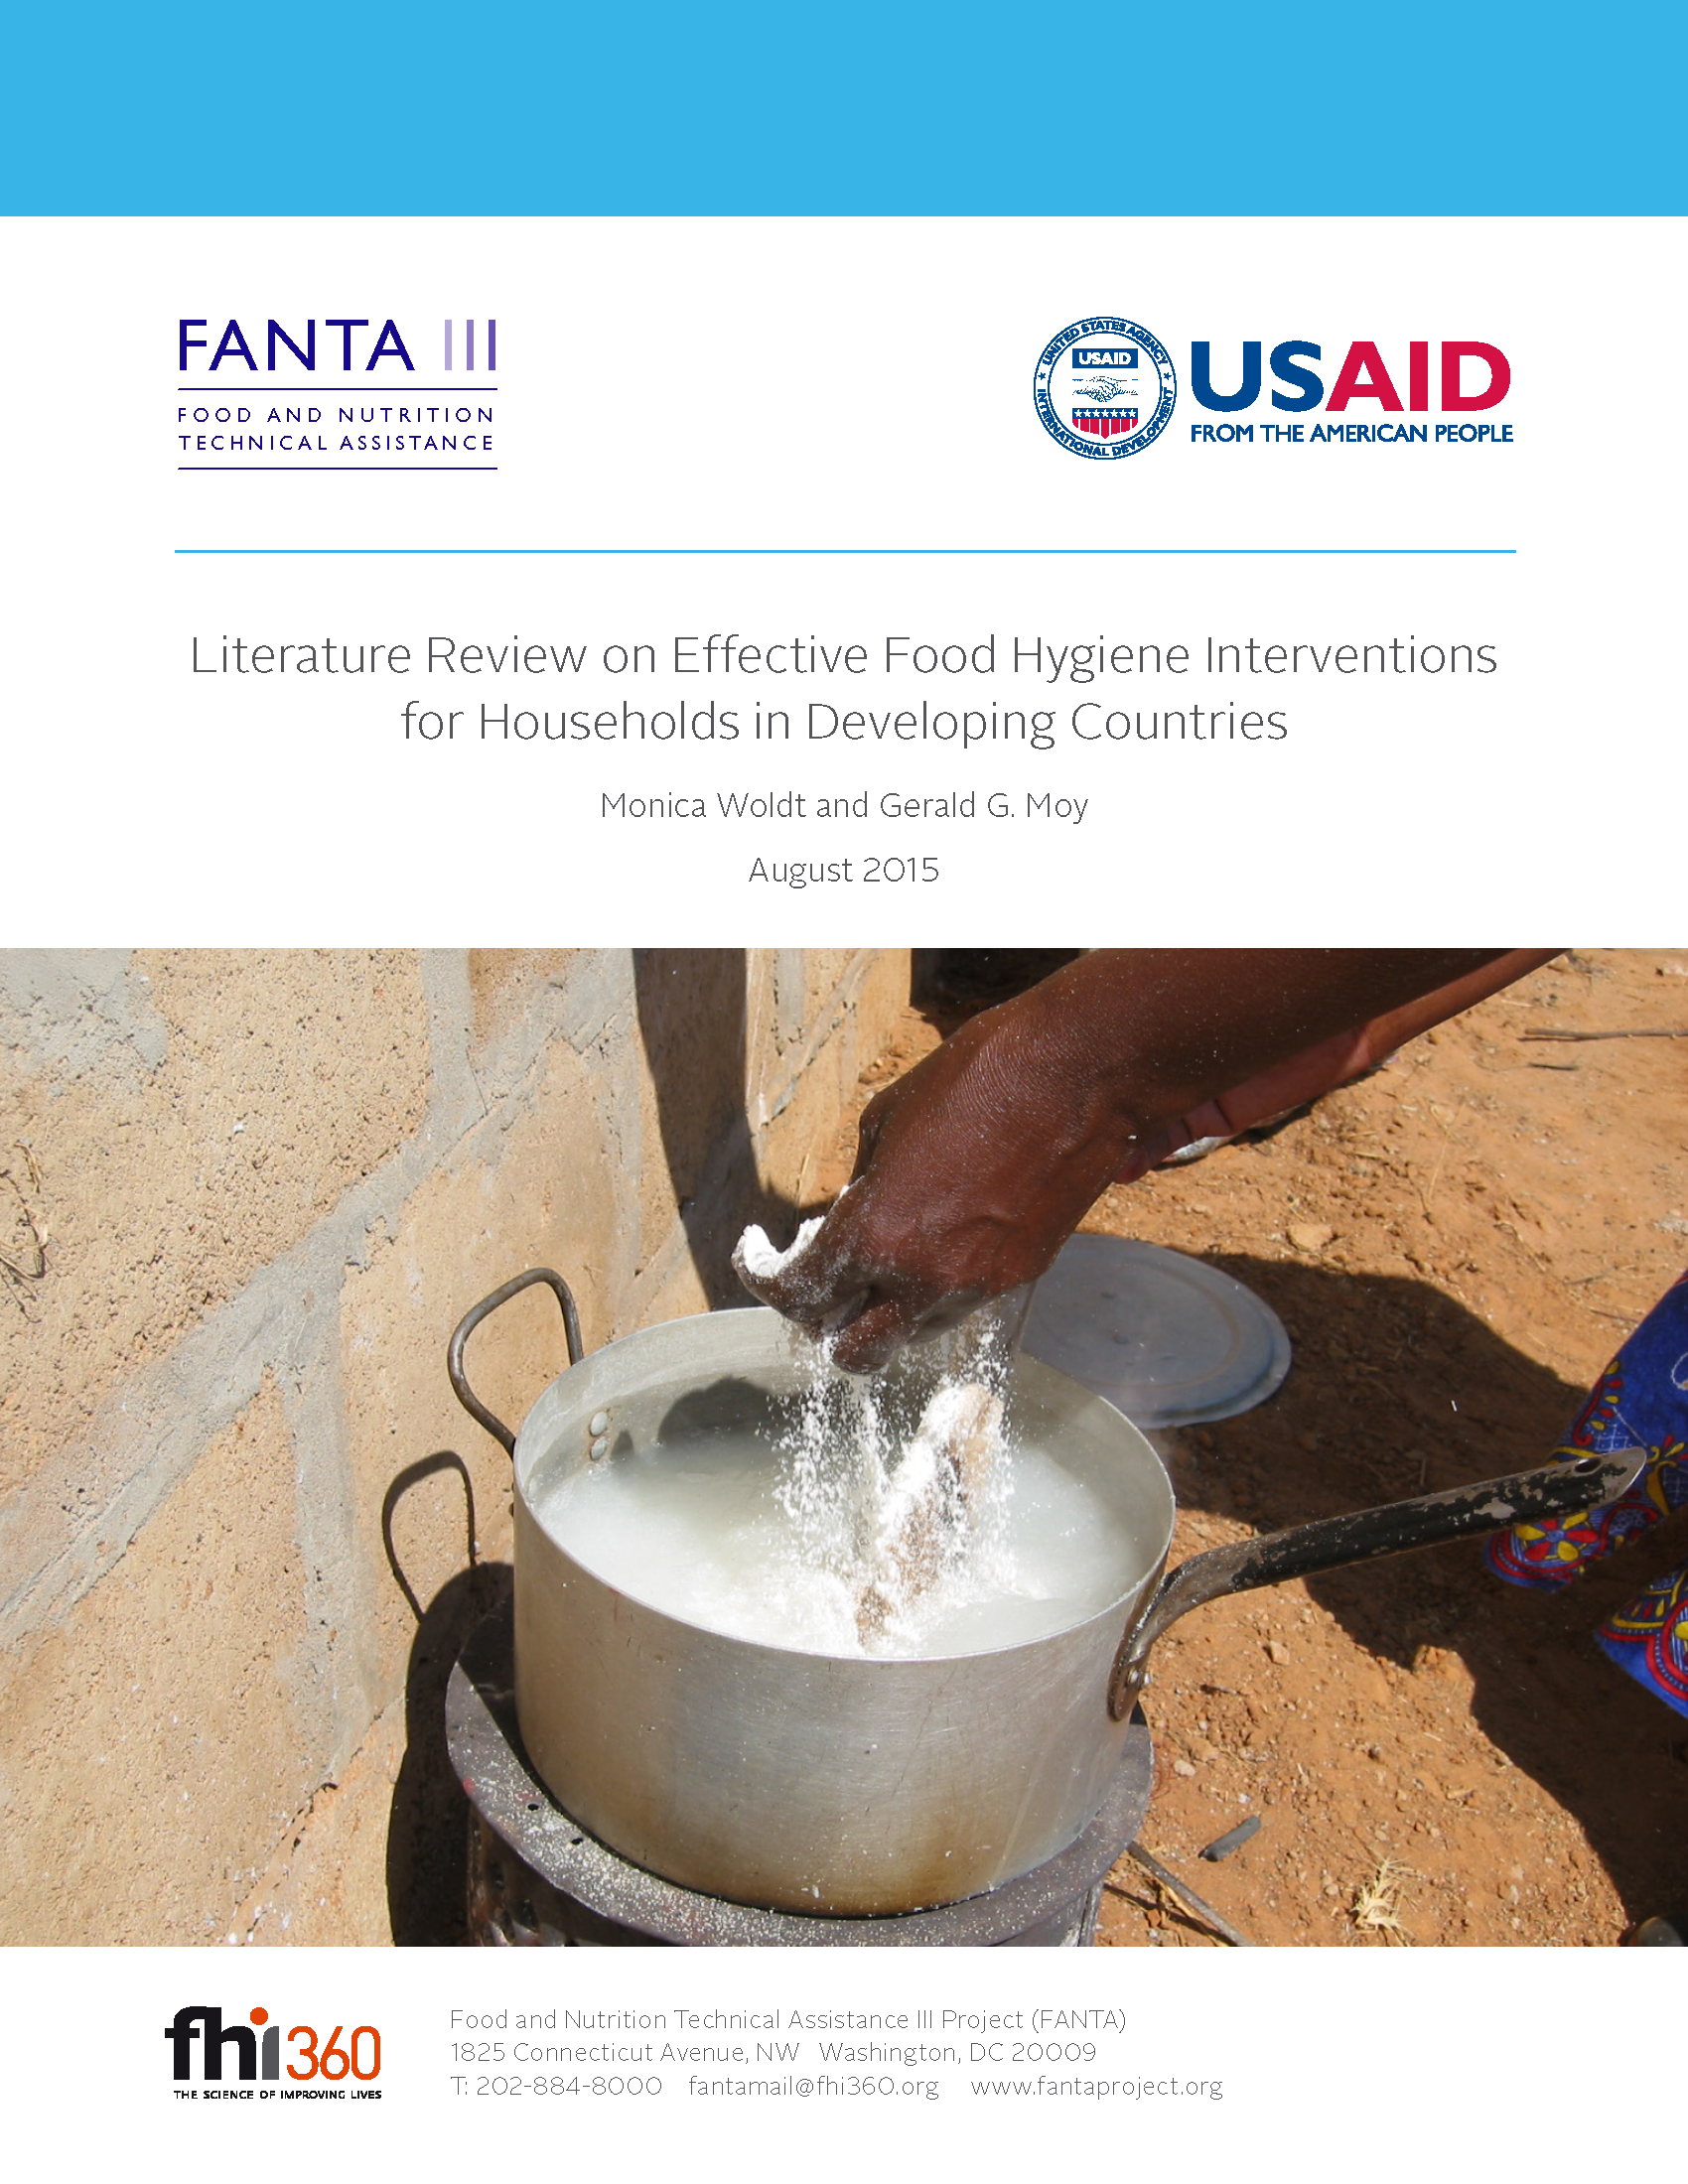 Page de couverture de la revue de la littérature sur les interventions efficaces en matière d'hygiène alimentaire pour les ménages des pays en développement